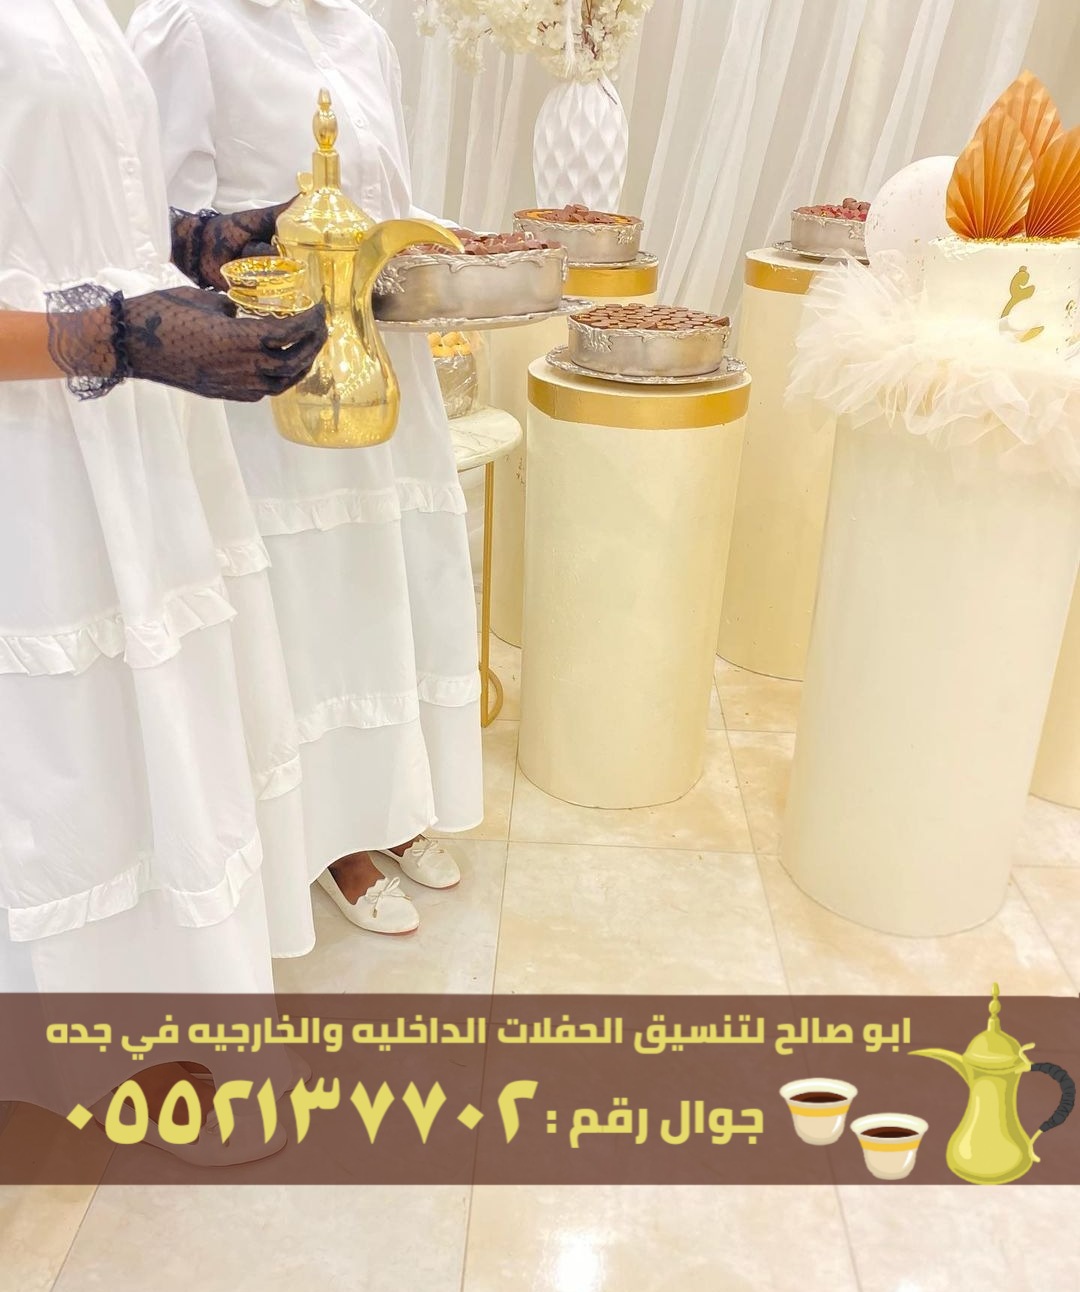 صبابابين قهوة رجال ونساء في جدة, 0552137702 P_2456hyxdg6